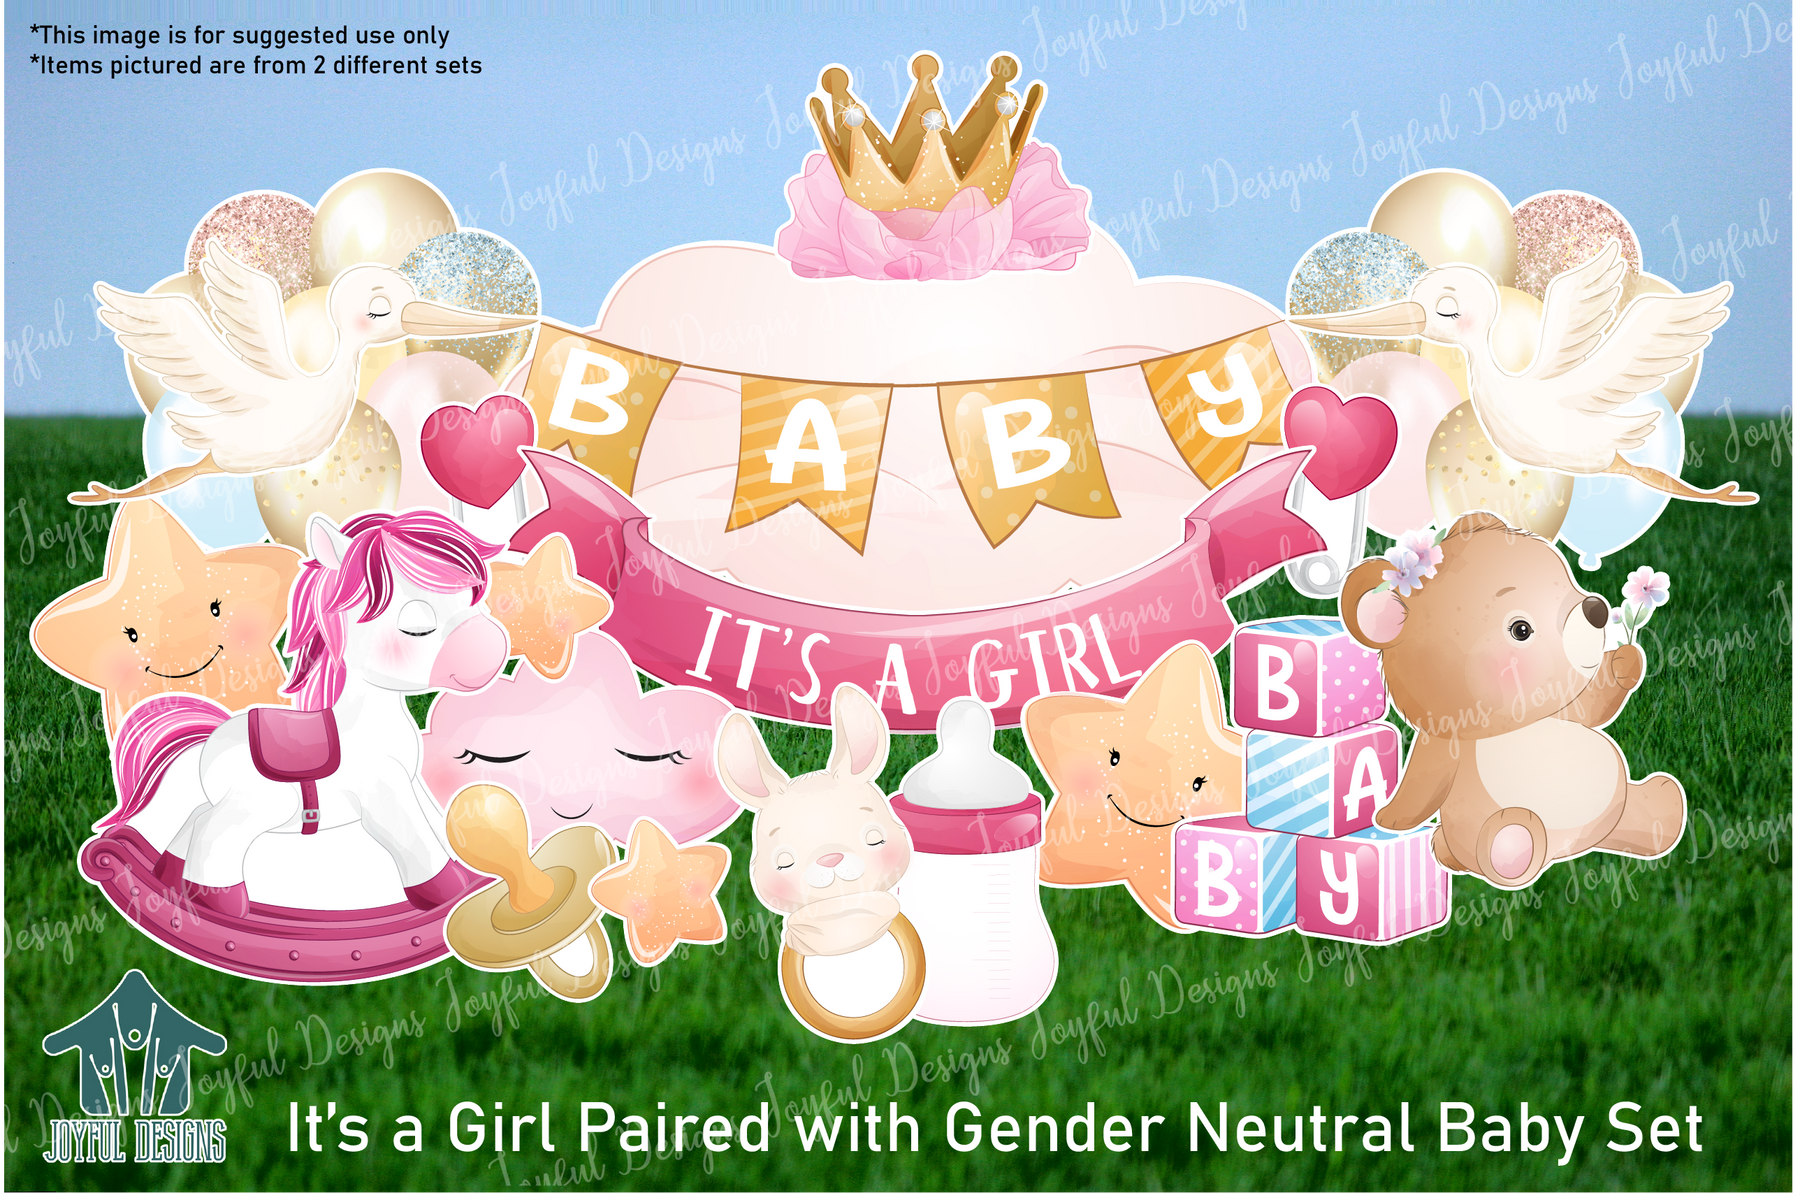 Gender Neutral Baby Centerpiece & Flair Theme Set